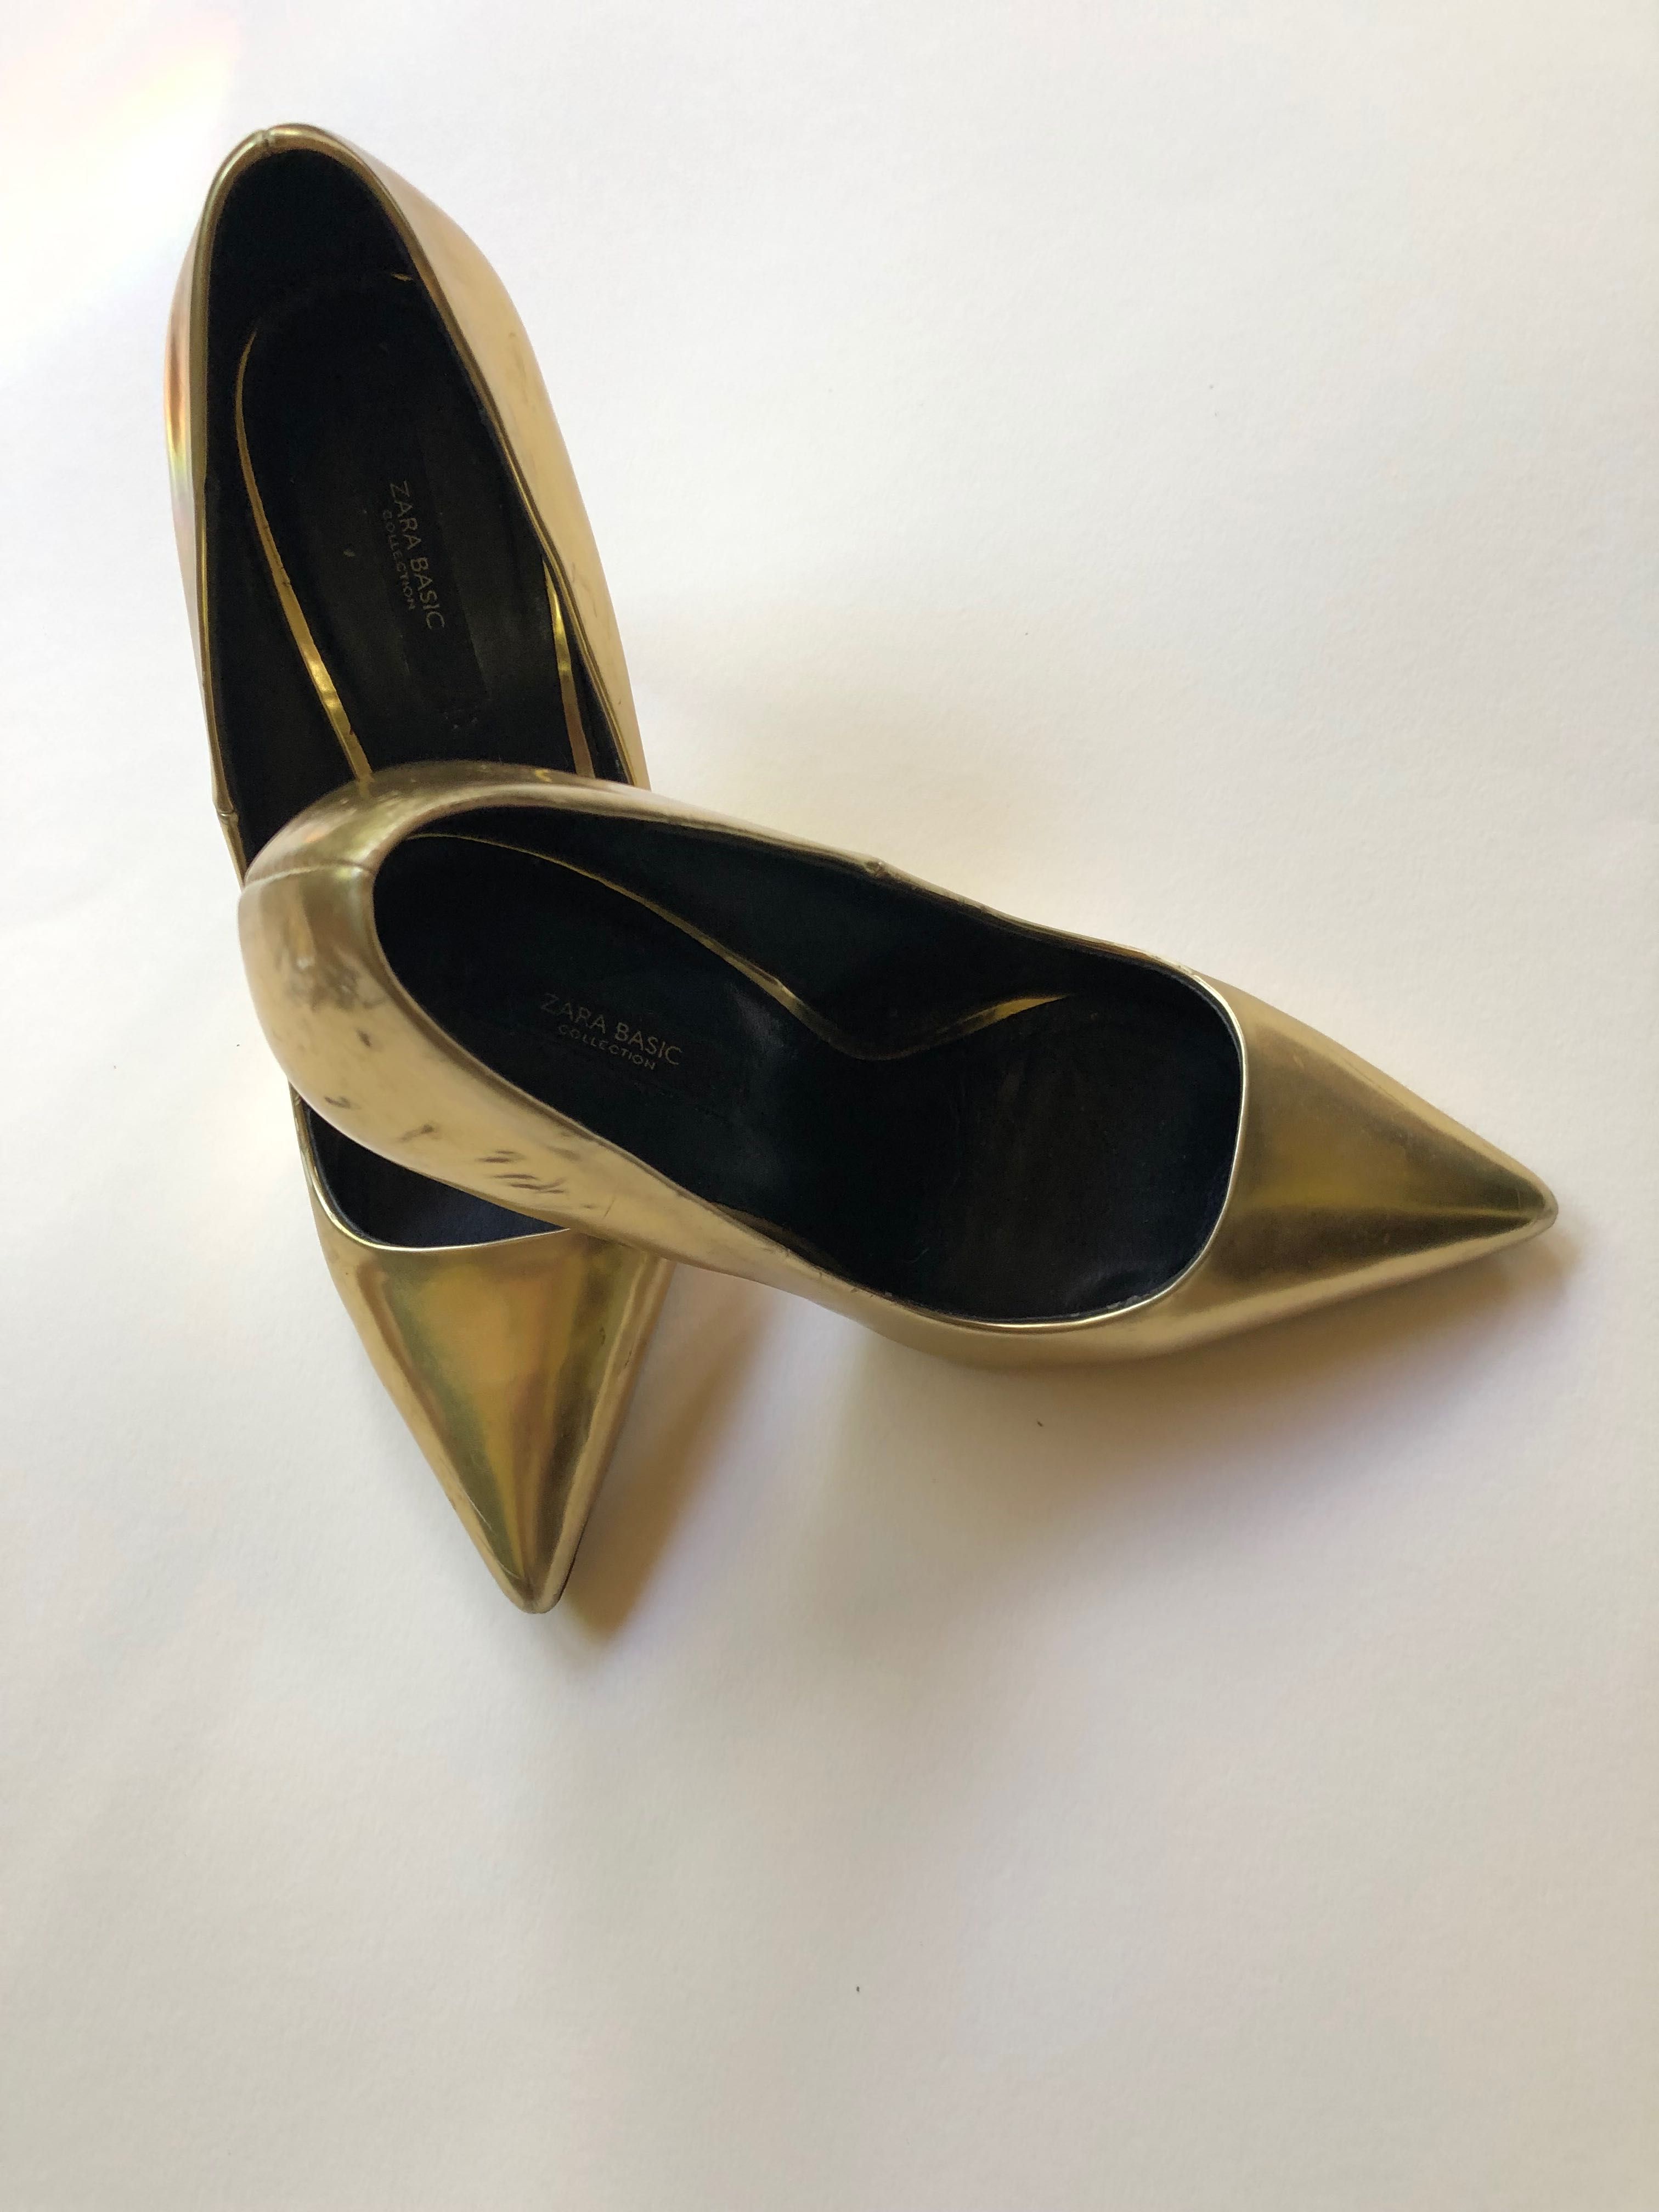 Золотые туфли на высоком узком каблучке с острым носиком фирмы Zara